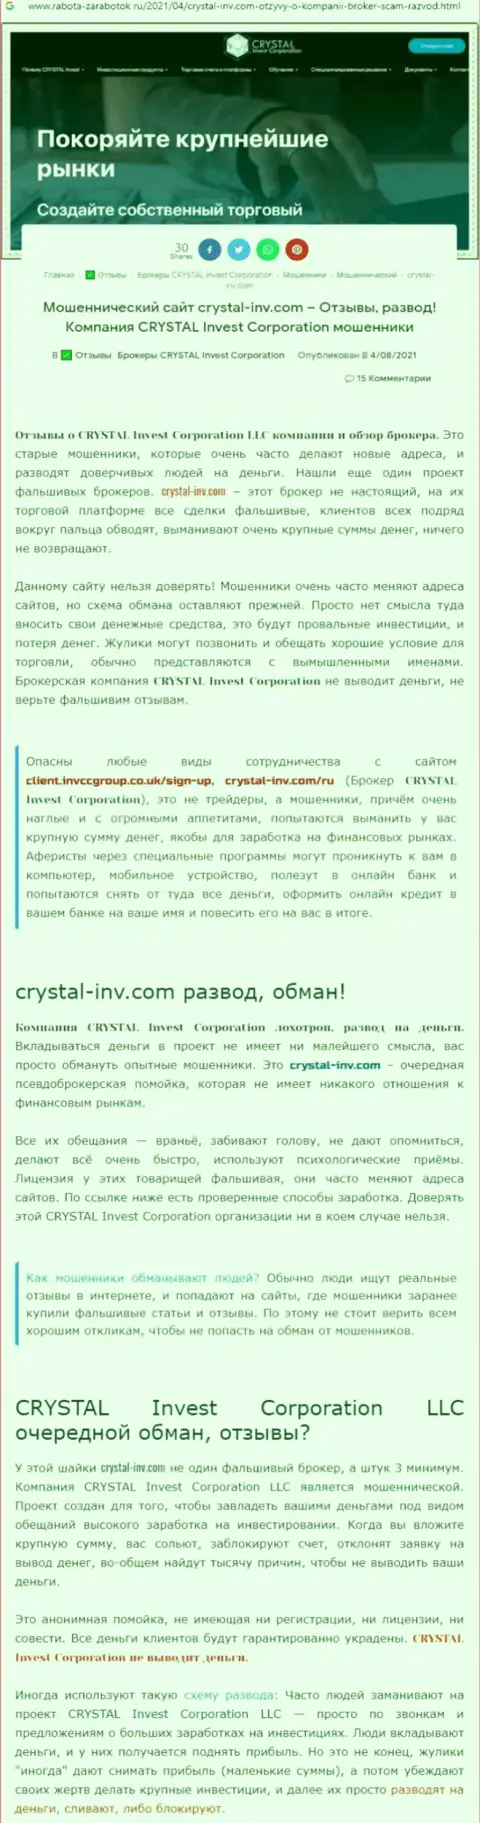 Материал, выводящий на чистую воду контору Crystal-Inv Com, взятый с сервиса с обзорами противозаконных действий разных контор